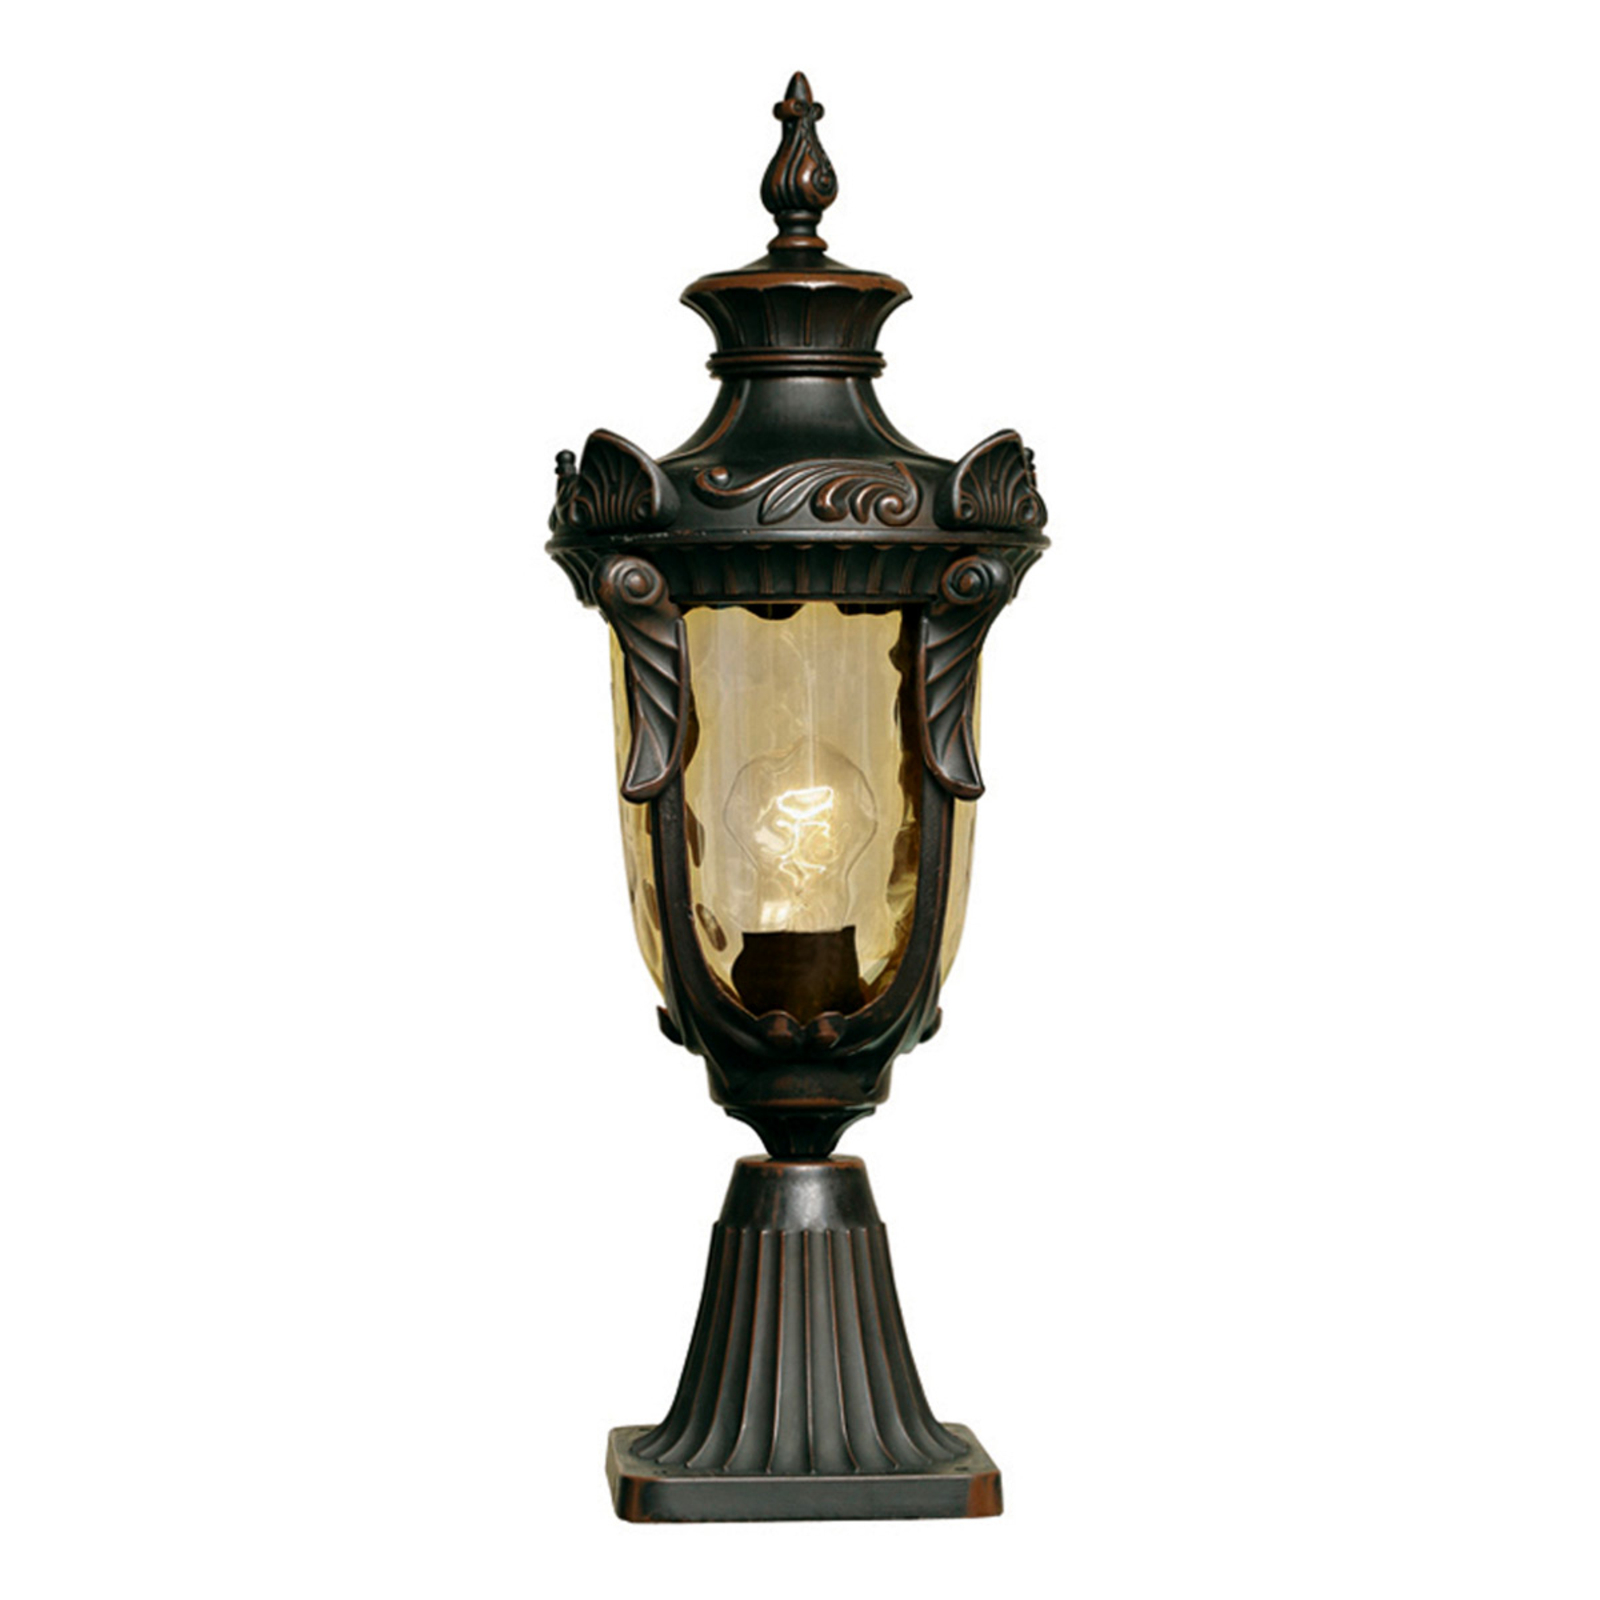 Philadelphia Pillar Light in a Historical Design